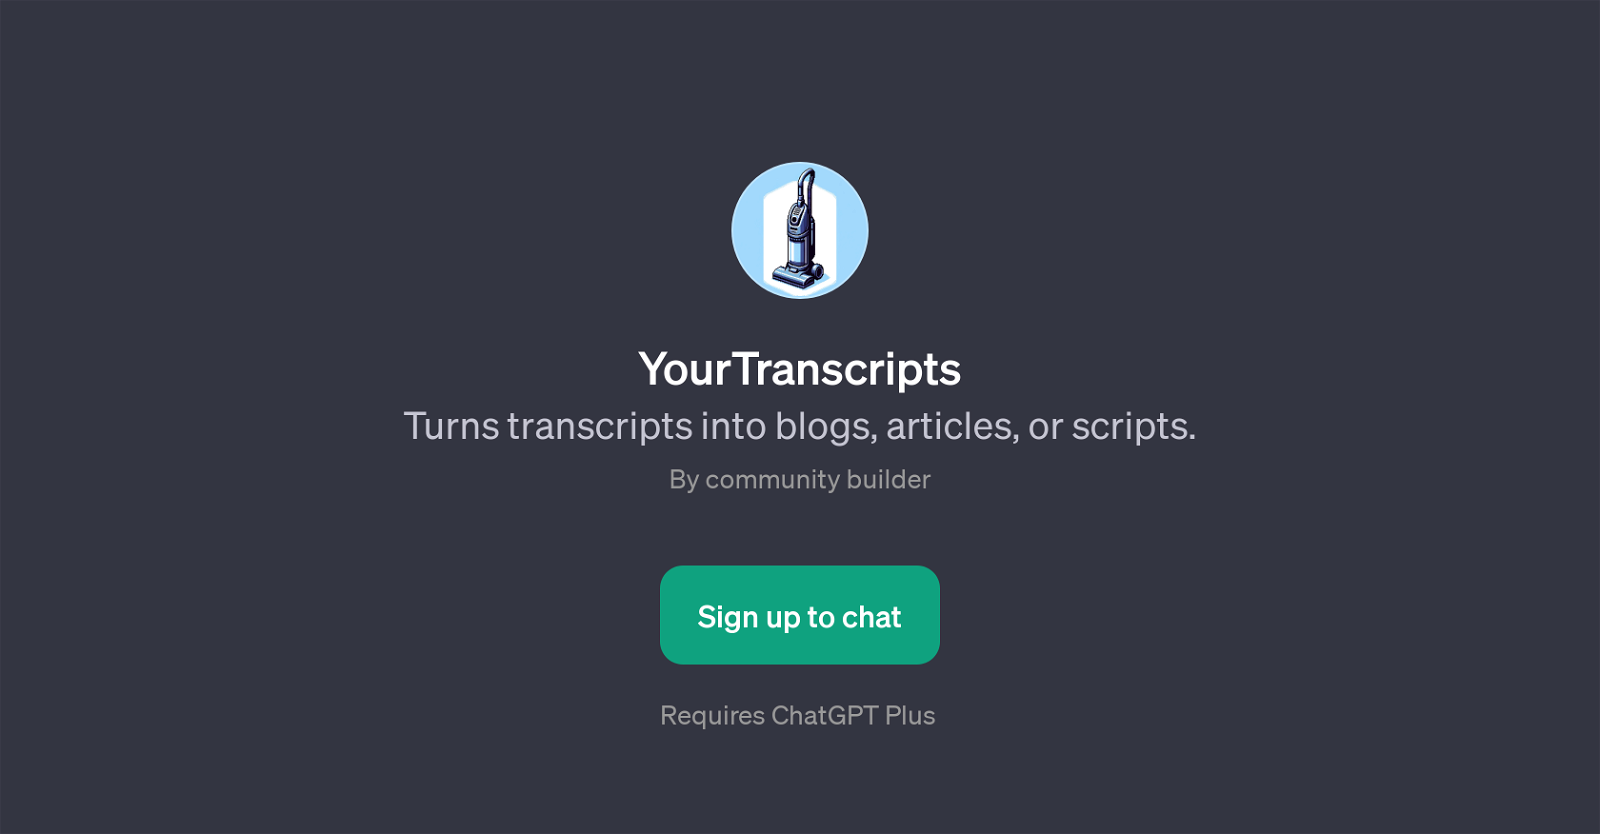 YourTranscripts website